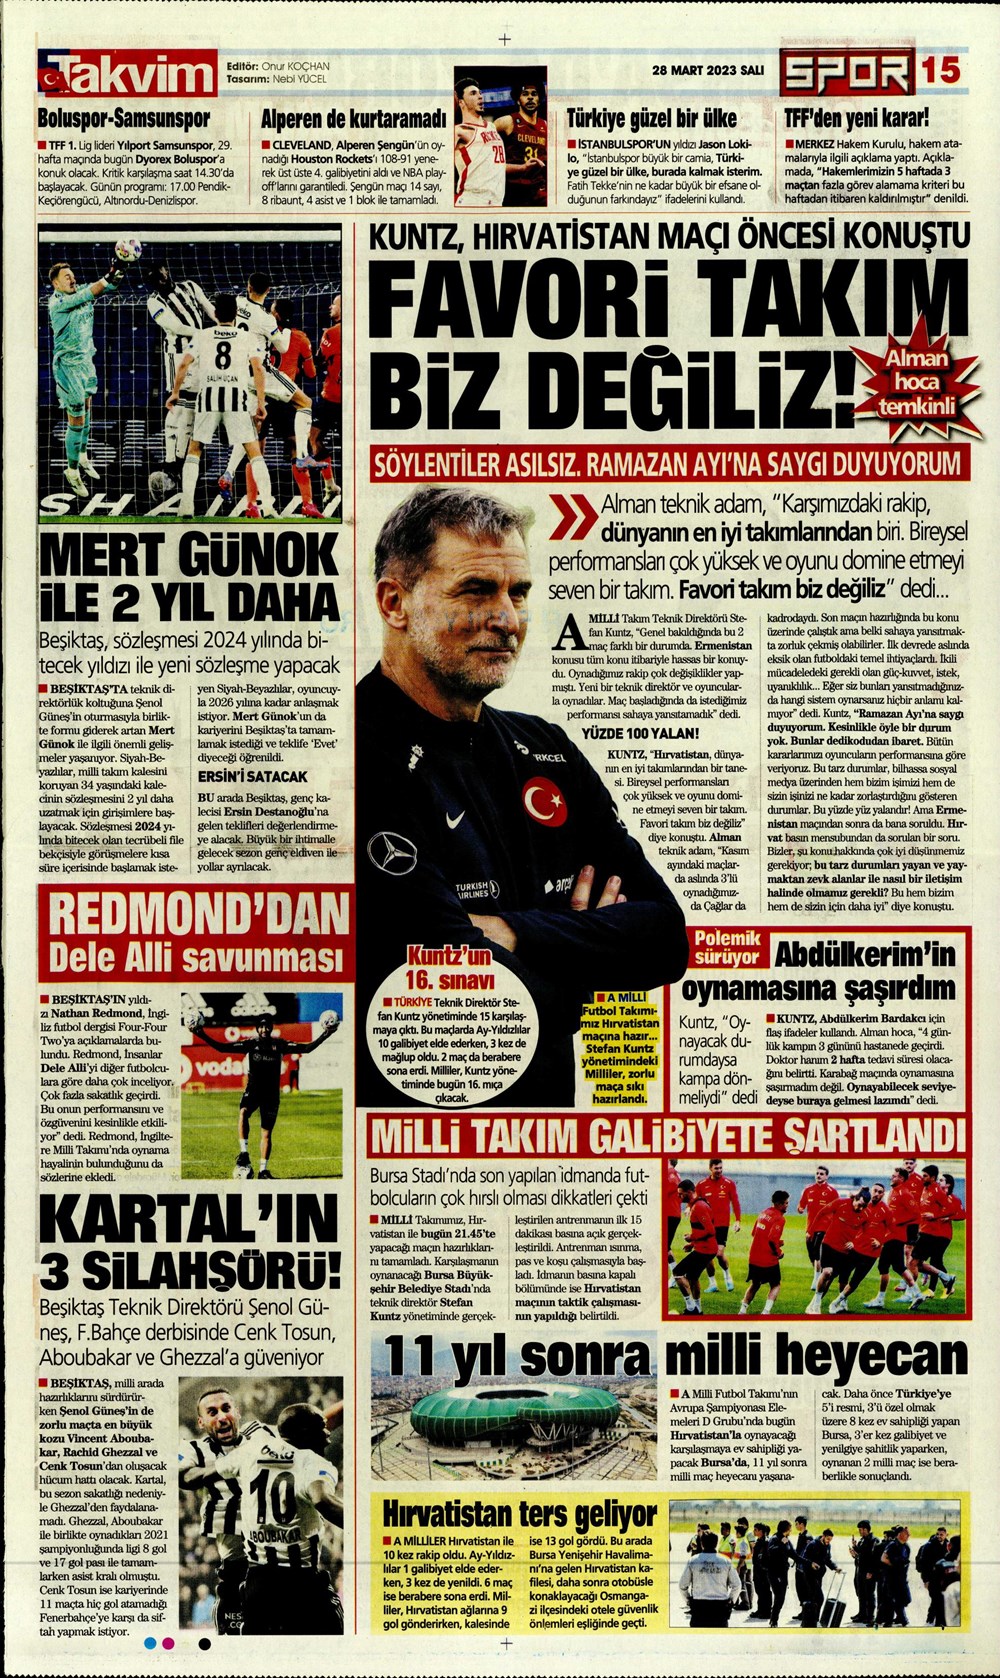 "Vurduğumuz gol olsun" - Sporun manşetleri - 32. Foto